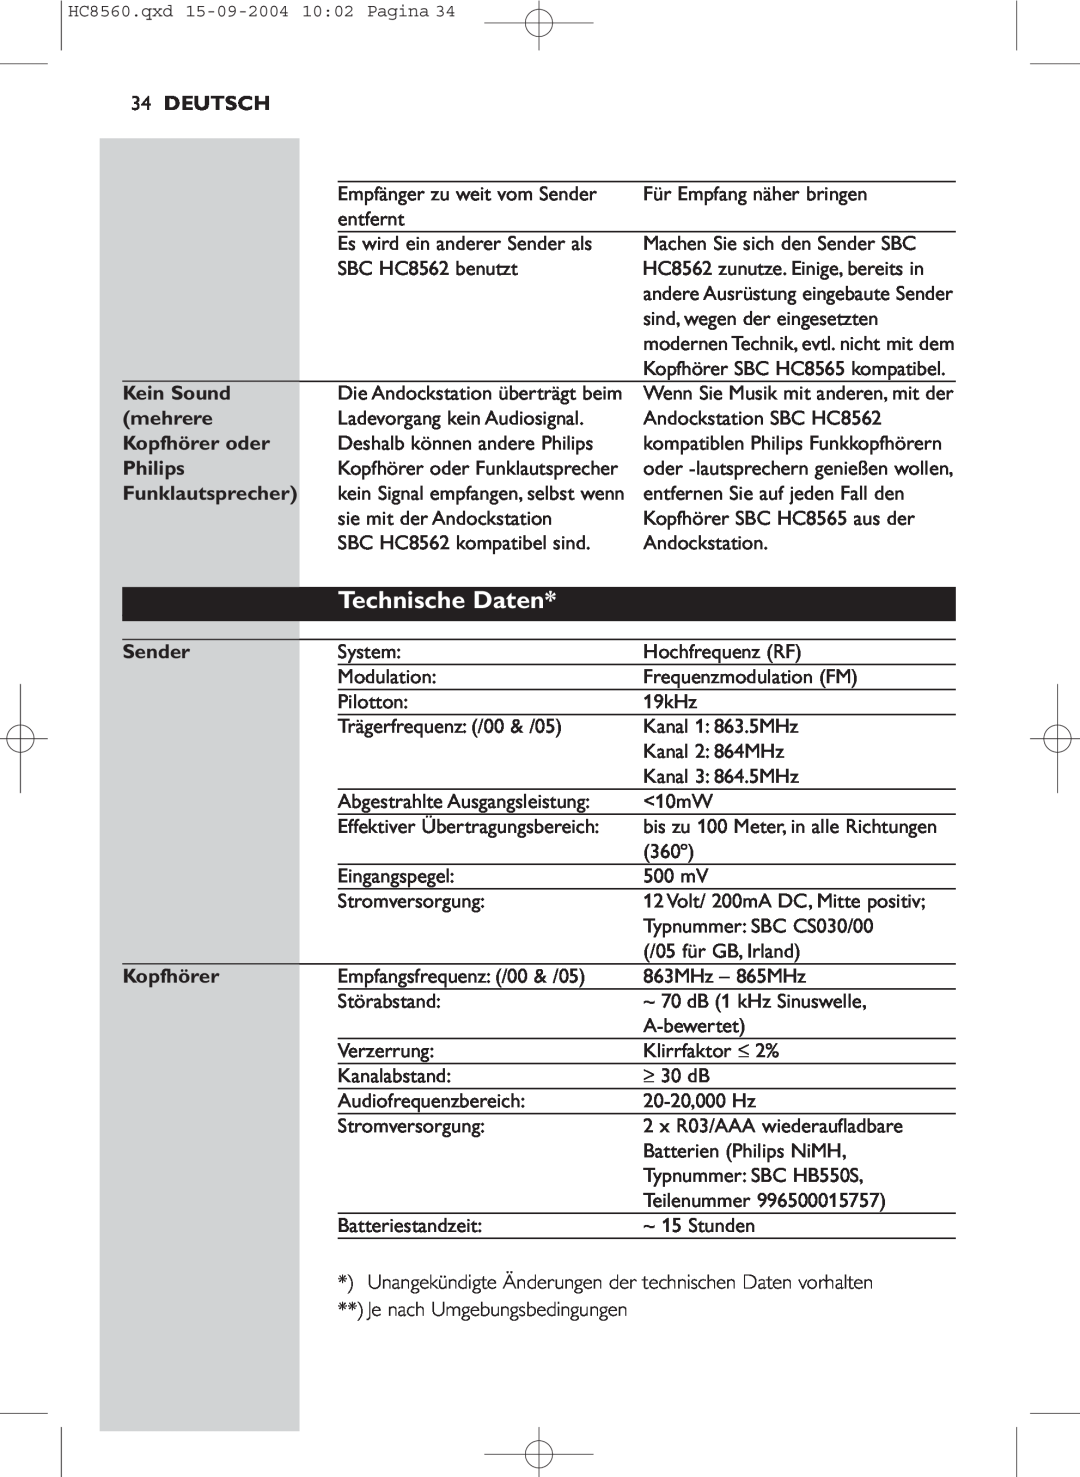 Philips HC 8560 manual Technische Daten, Deutsch, Kein Sound, mehrere, Kopfhörer oder, Philips, Funklautsprecher, Sender 